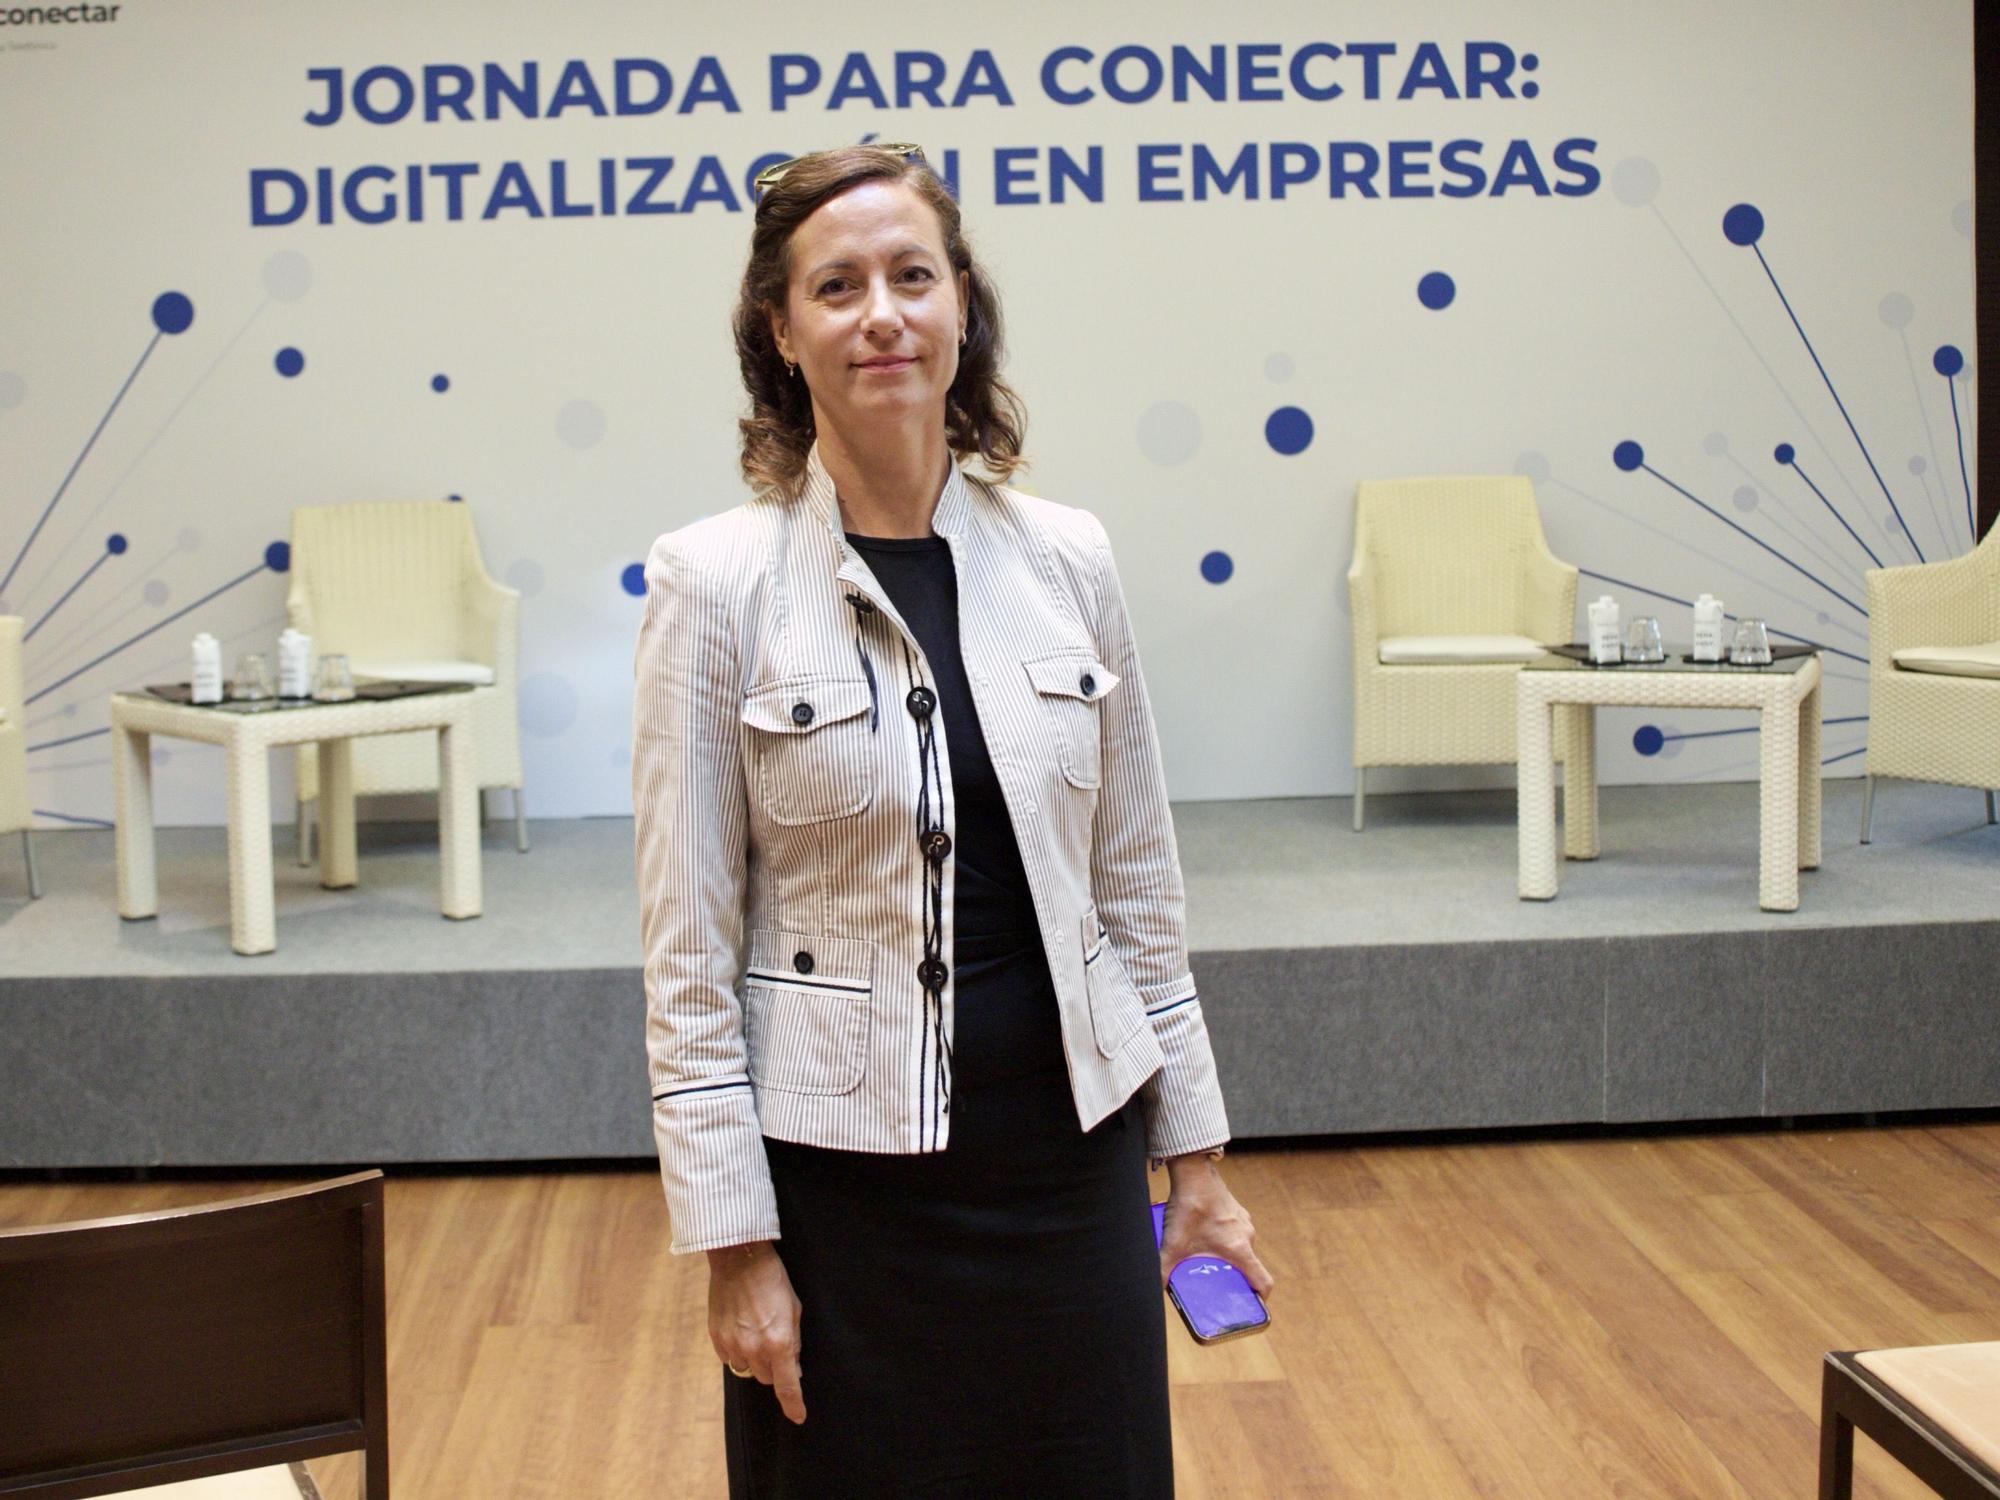 Evento Telefónica - Jornada para conectar: digitalización de empresas